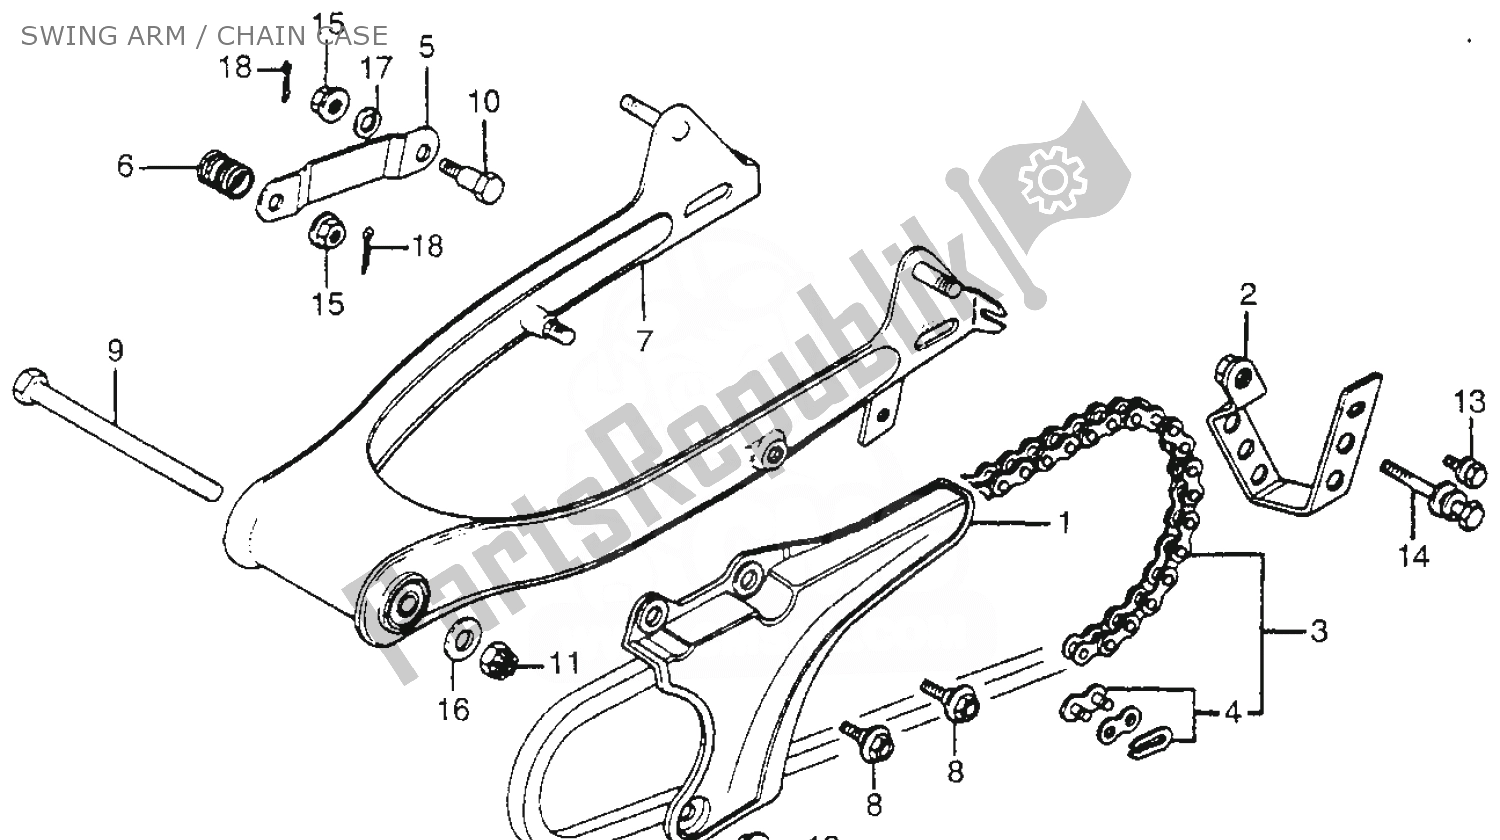 Alle onderdelen voor de Swing Arm / Chain Case van de Honda CT 70 Trail 1981